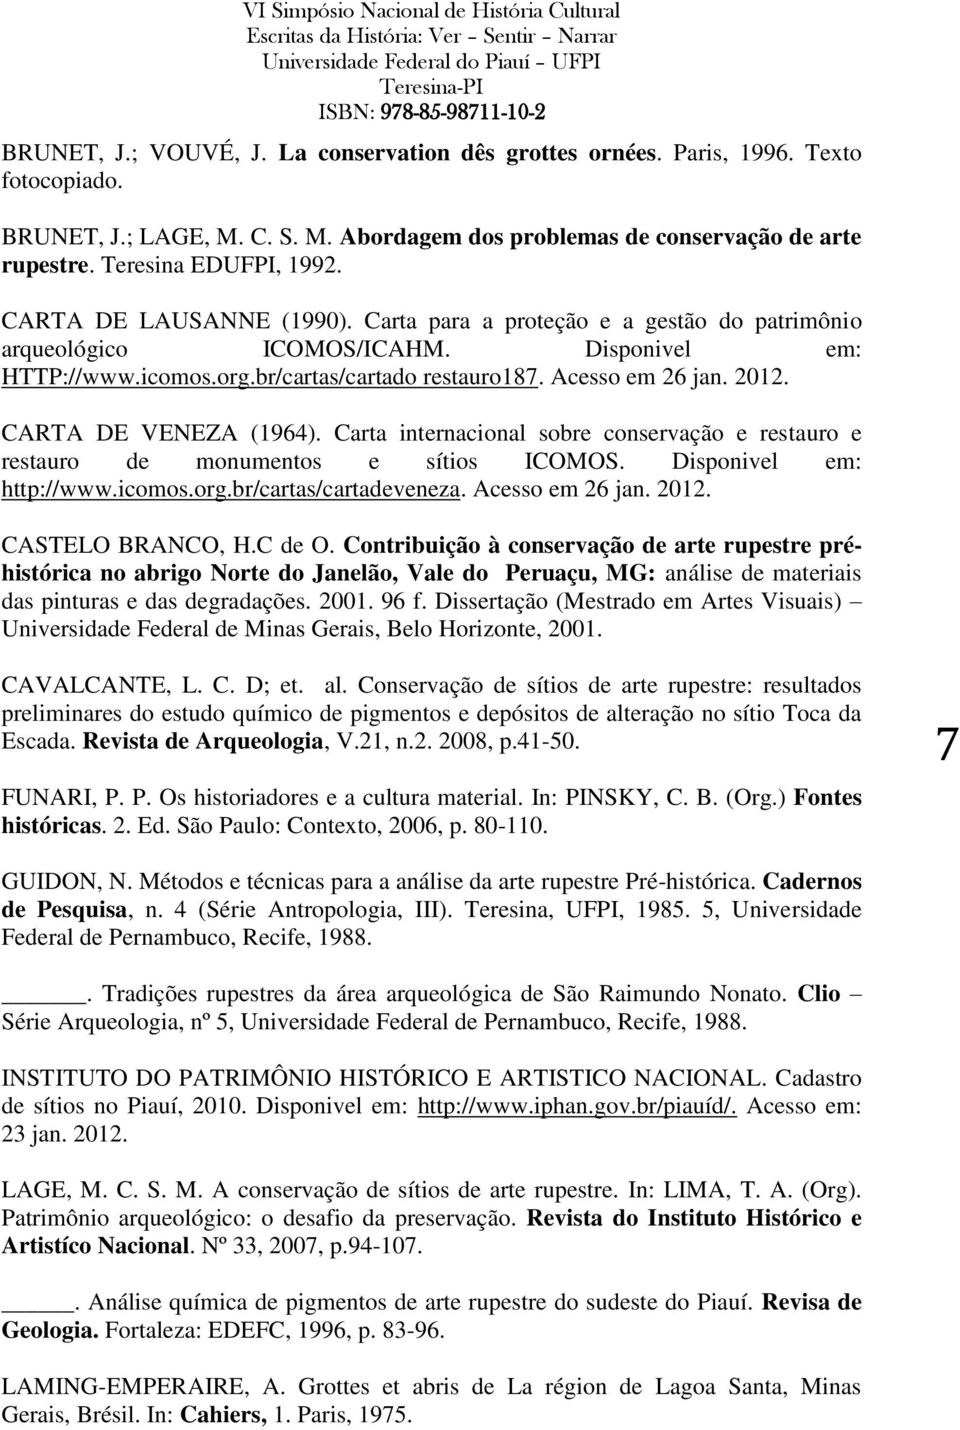 CARTA DE VENEZA (1964). Carta internacional sobre conservação e restauro e restauro de monumentos e sítios ICOMOS. Disponivel em: http://www.icomos.org.br/cartas/cartadeveneza. Acesso em 26 jan. 2012.